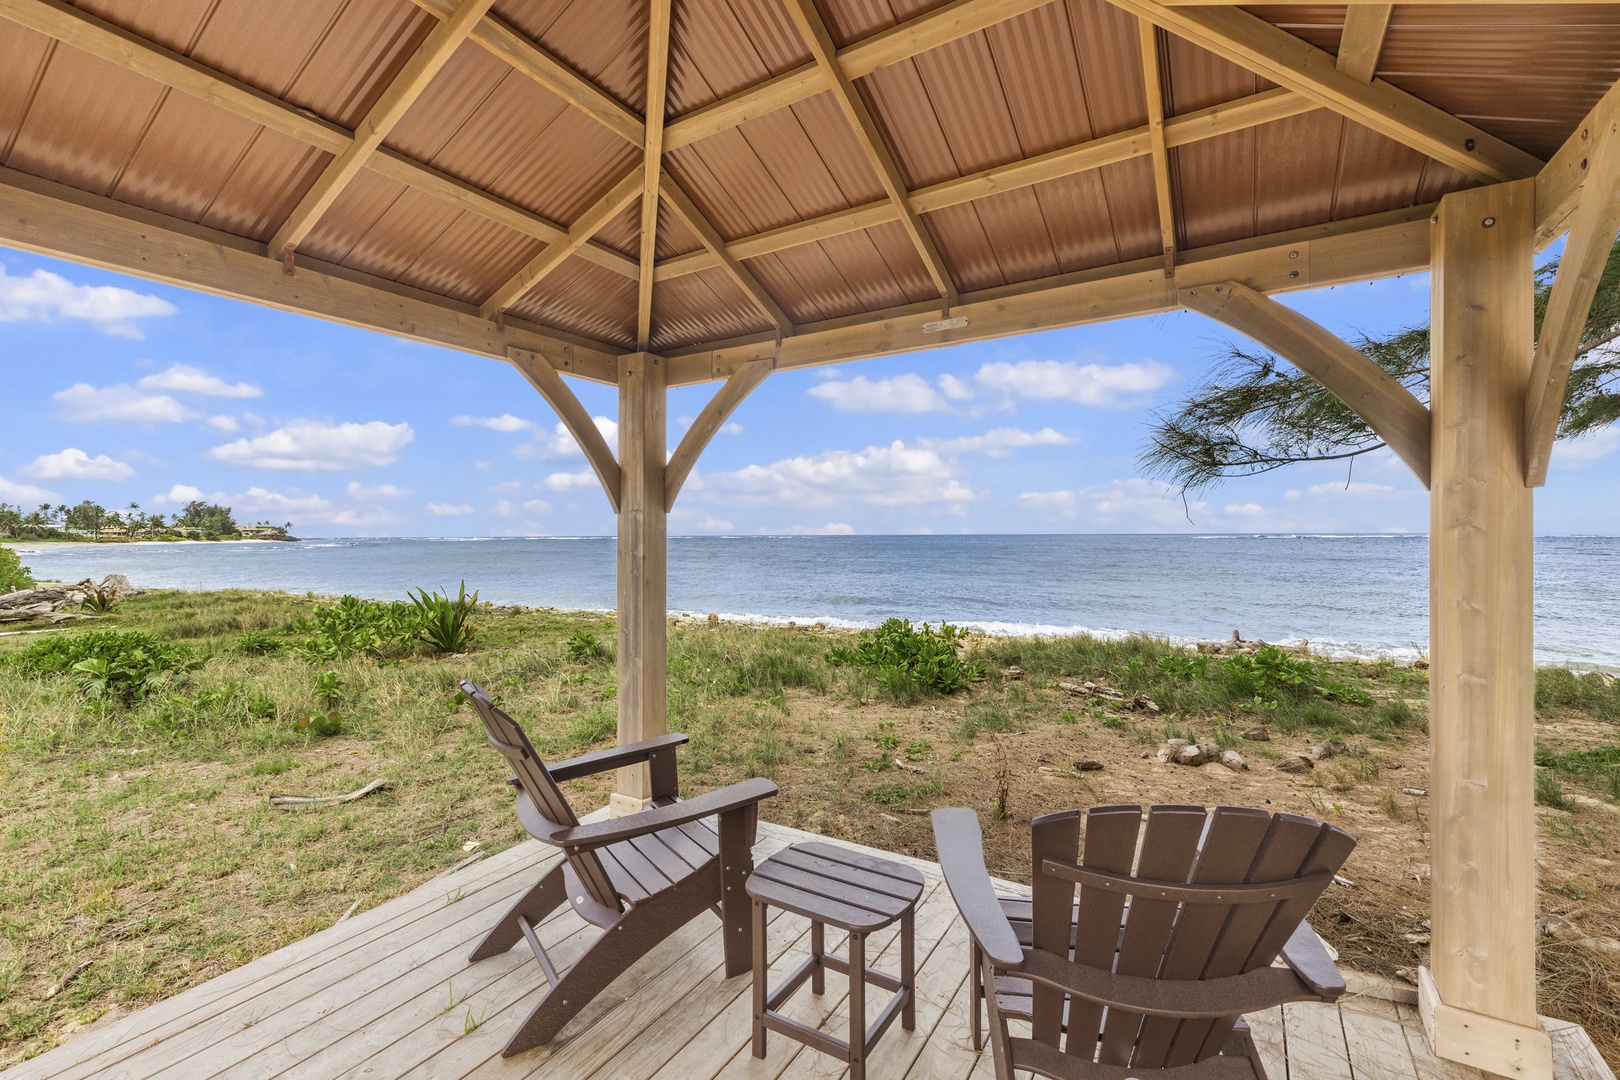 Waialua Vacation Rentals, Kala'iku Main - Beachfront gazebo for relaxing near the ocean